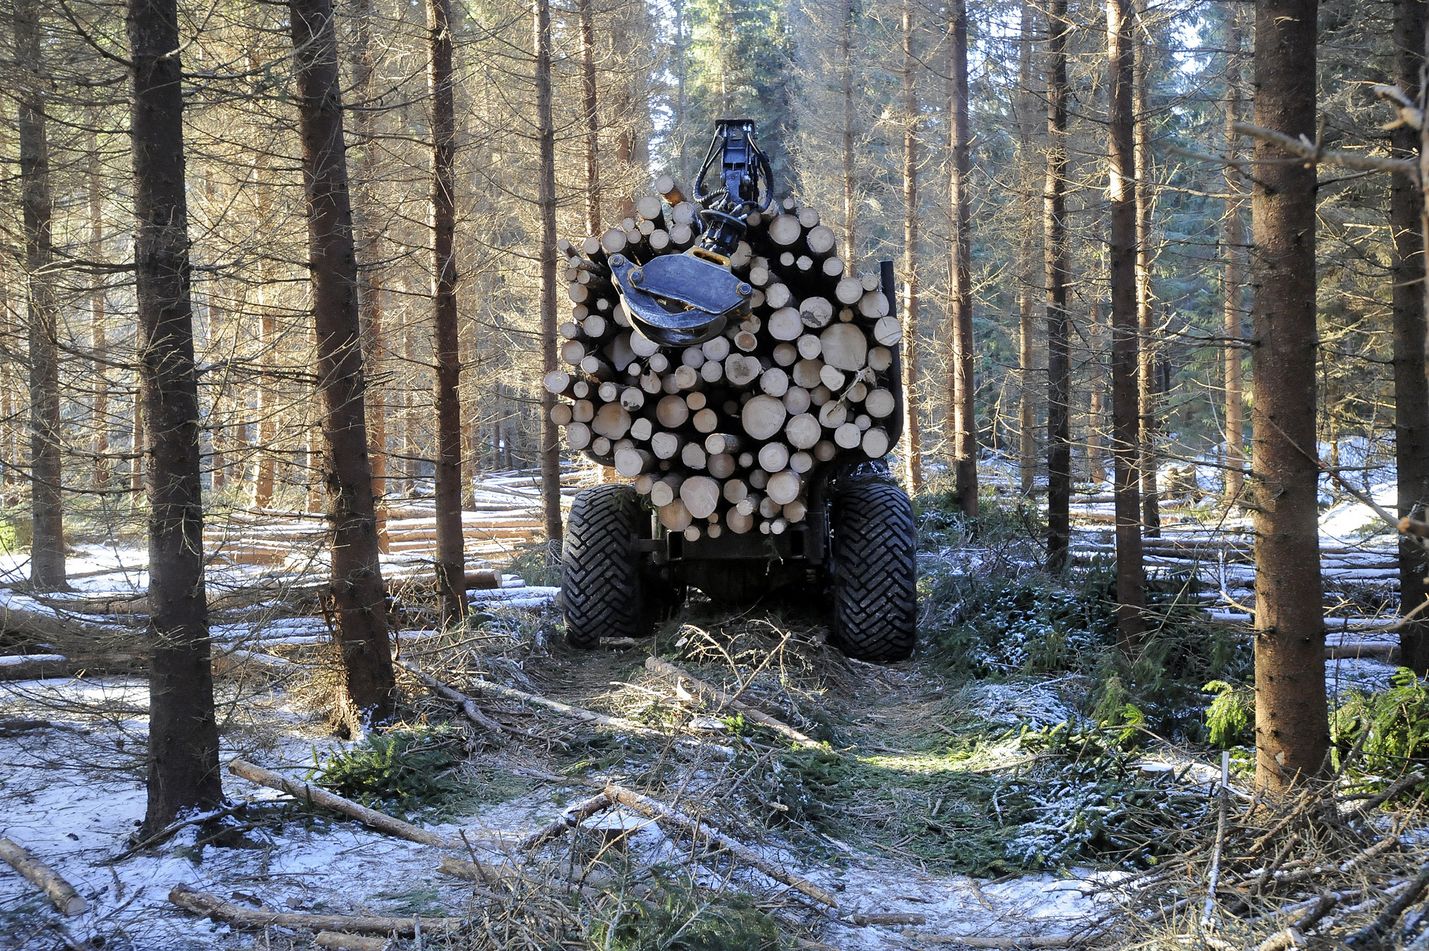 Nyt kun myös Suomessa ollaan nielujen osalta aikaisempaa heikommassa tilanteessa, koko ilmastopolitiikkaa tulee arvioida uudelleen metsien nieluja laajemmin, kirjoittaa Jyrki Peisa.